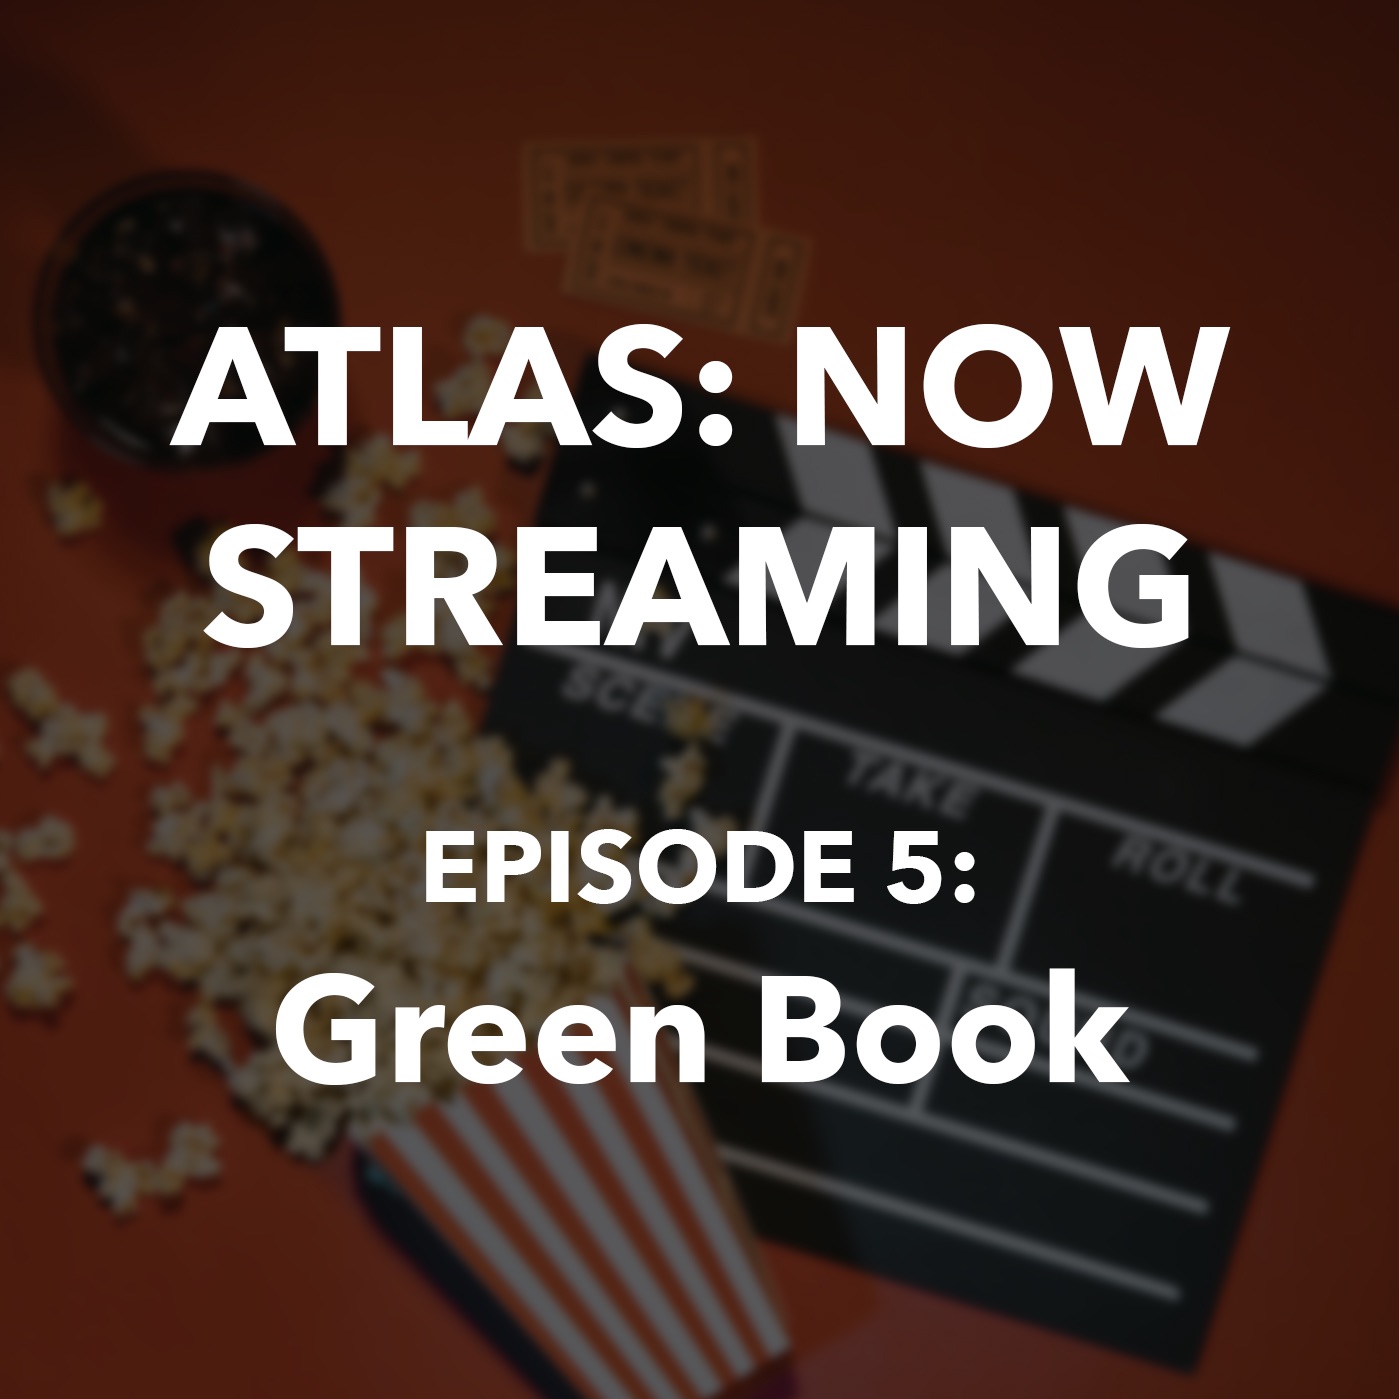 Atlas: Now Streaming Episode 5 - Green Book